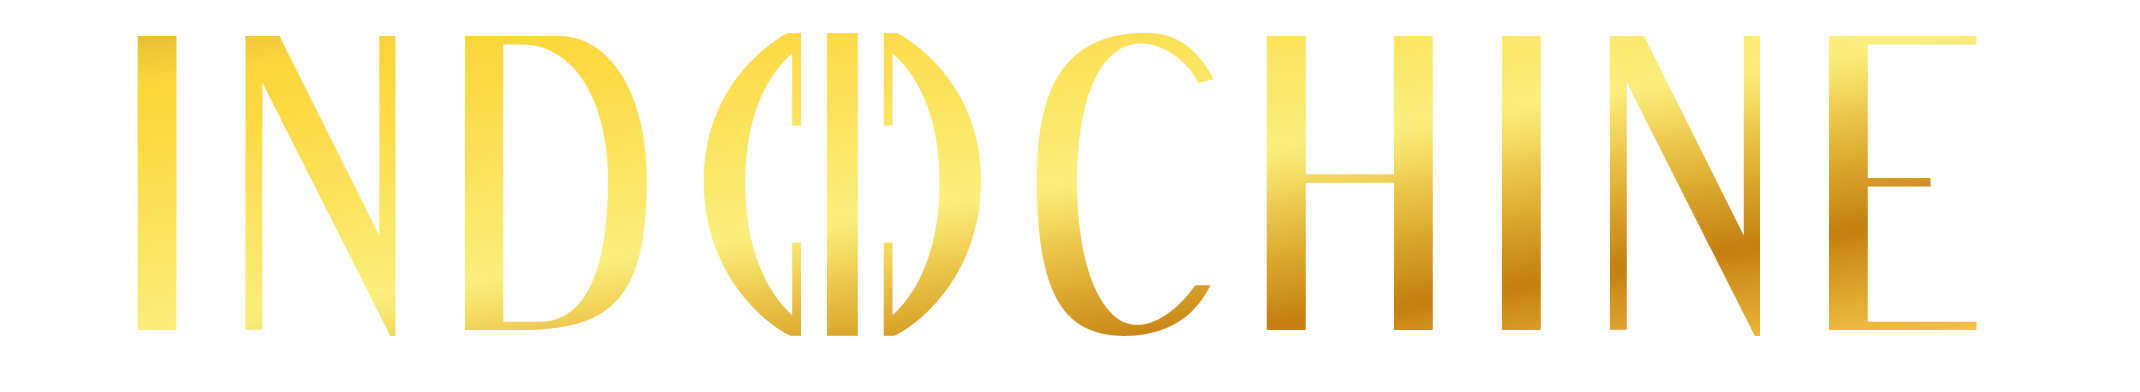 Indochine-Logo